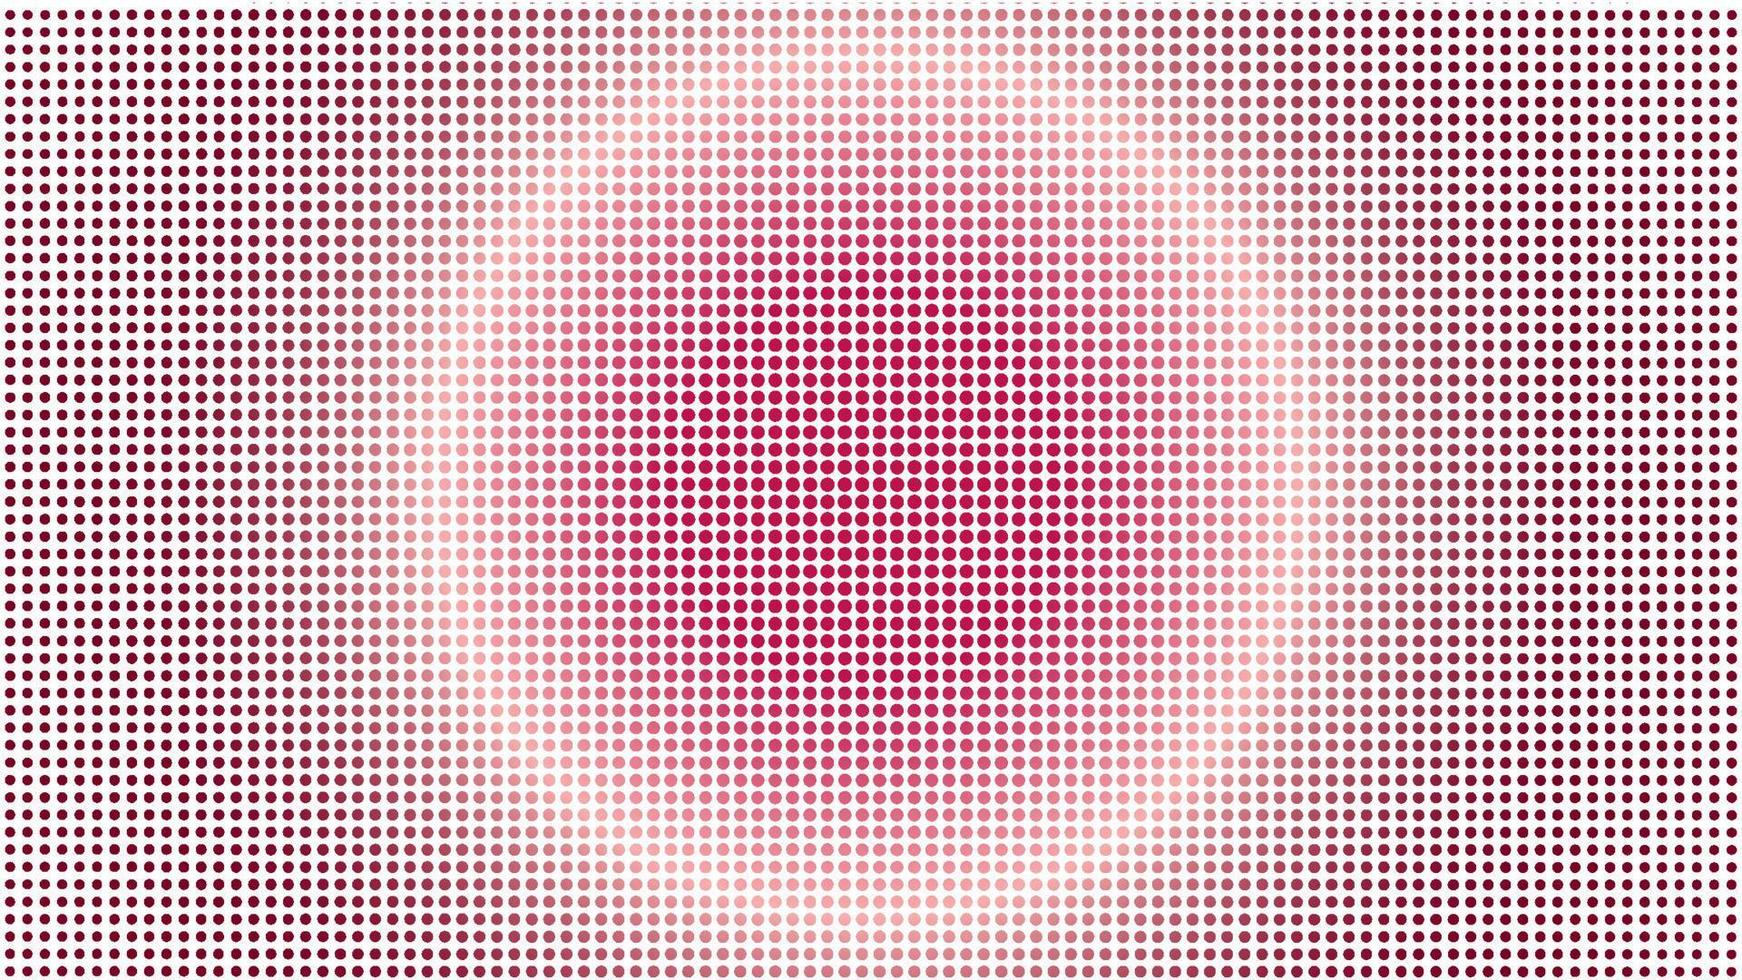 halvtonsbakgrundsdesignmall med stort ellipsformelement, popkonst, abstrakt prickmönsterillustration, vintagestruktur, rosa lila violett gradering, radiell gradient, prickig vektor